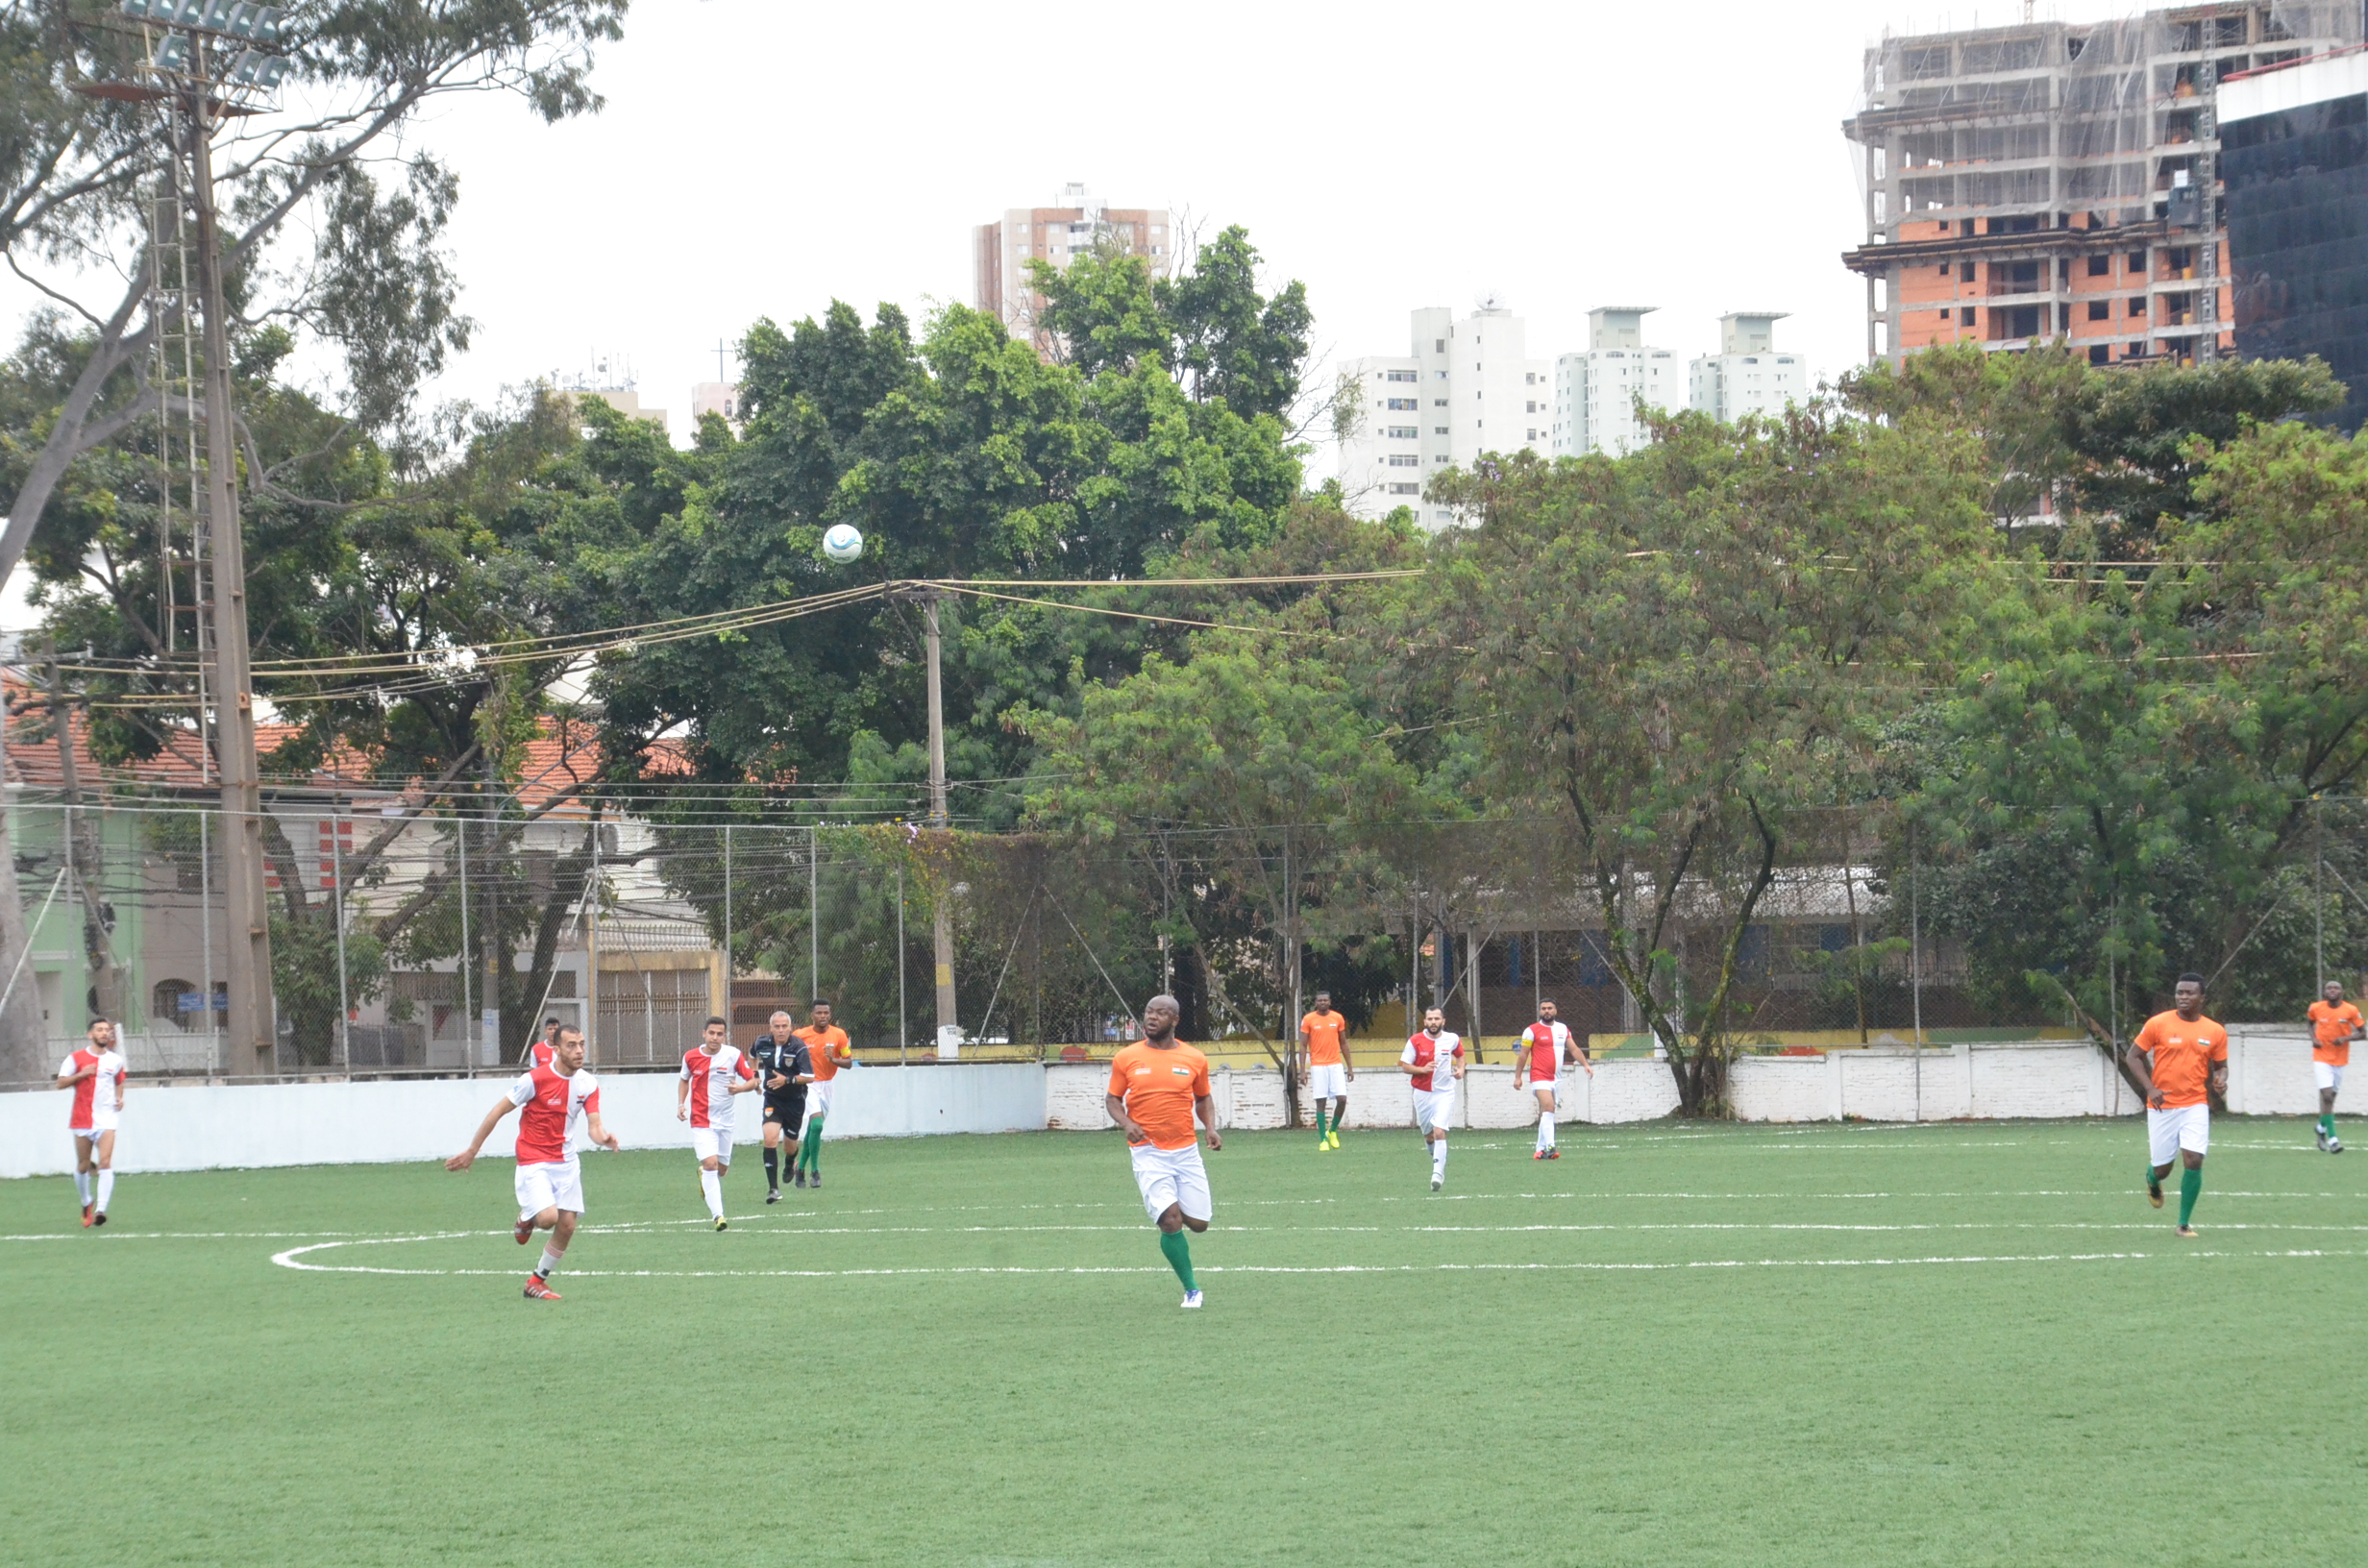 Jogadores de futebol jogando no campo, na Copa dos Refugiados